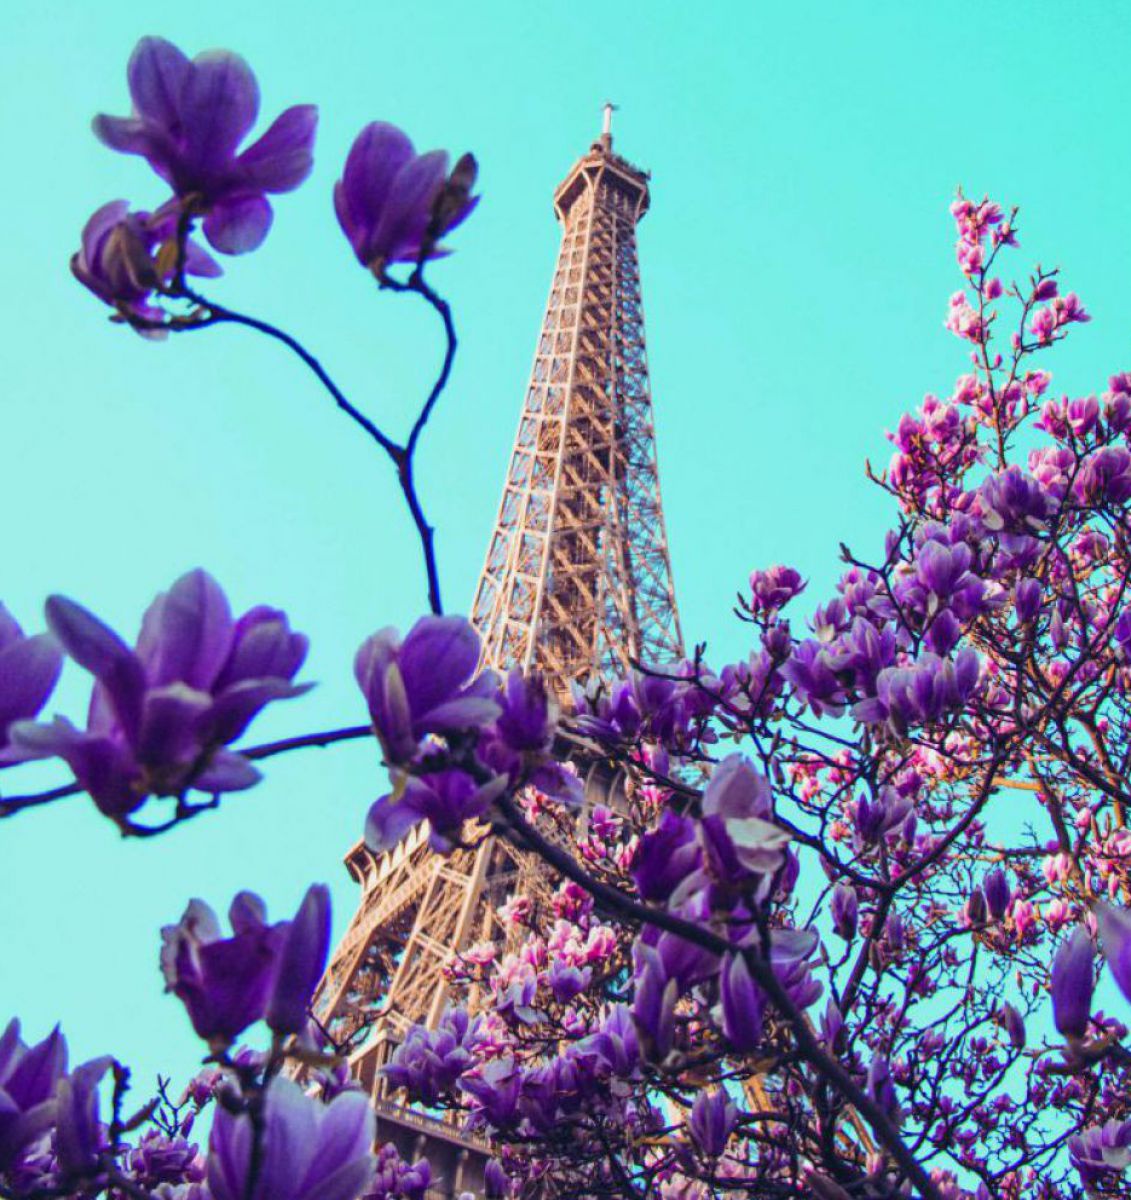 Hoch ragt der hell gestrichene Eiffelturm in den blauen Himmel, im Vordergrund die Blüten eines Magnolienbaums.